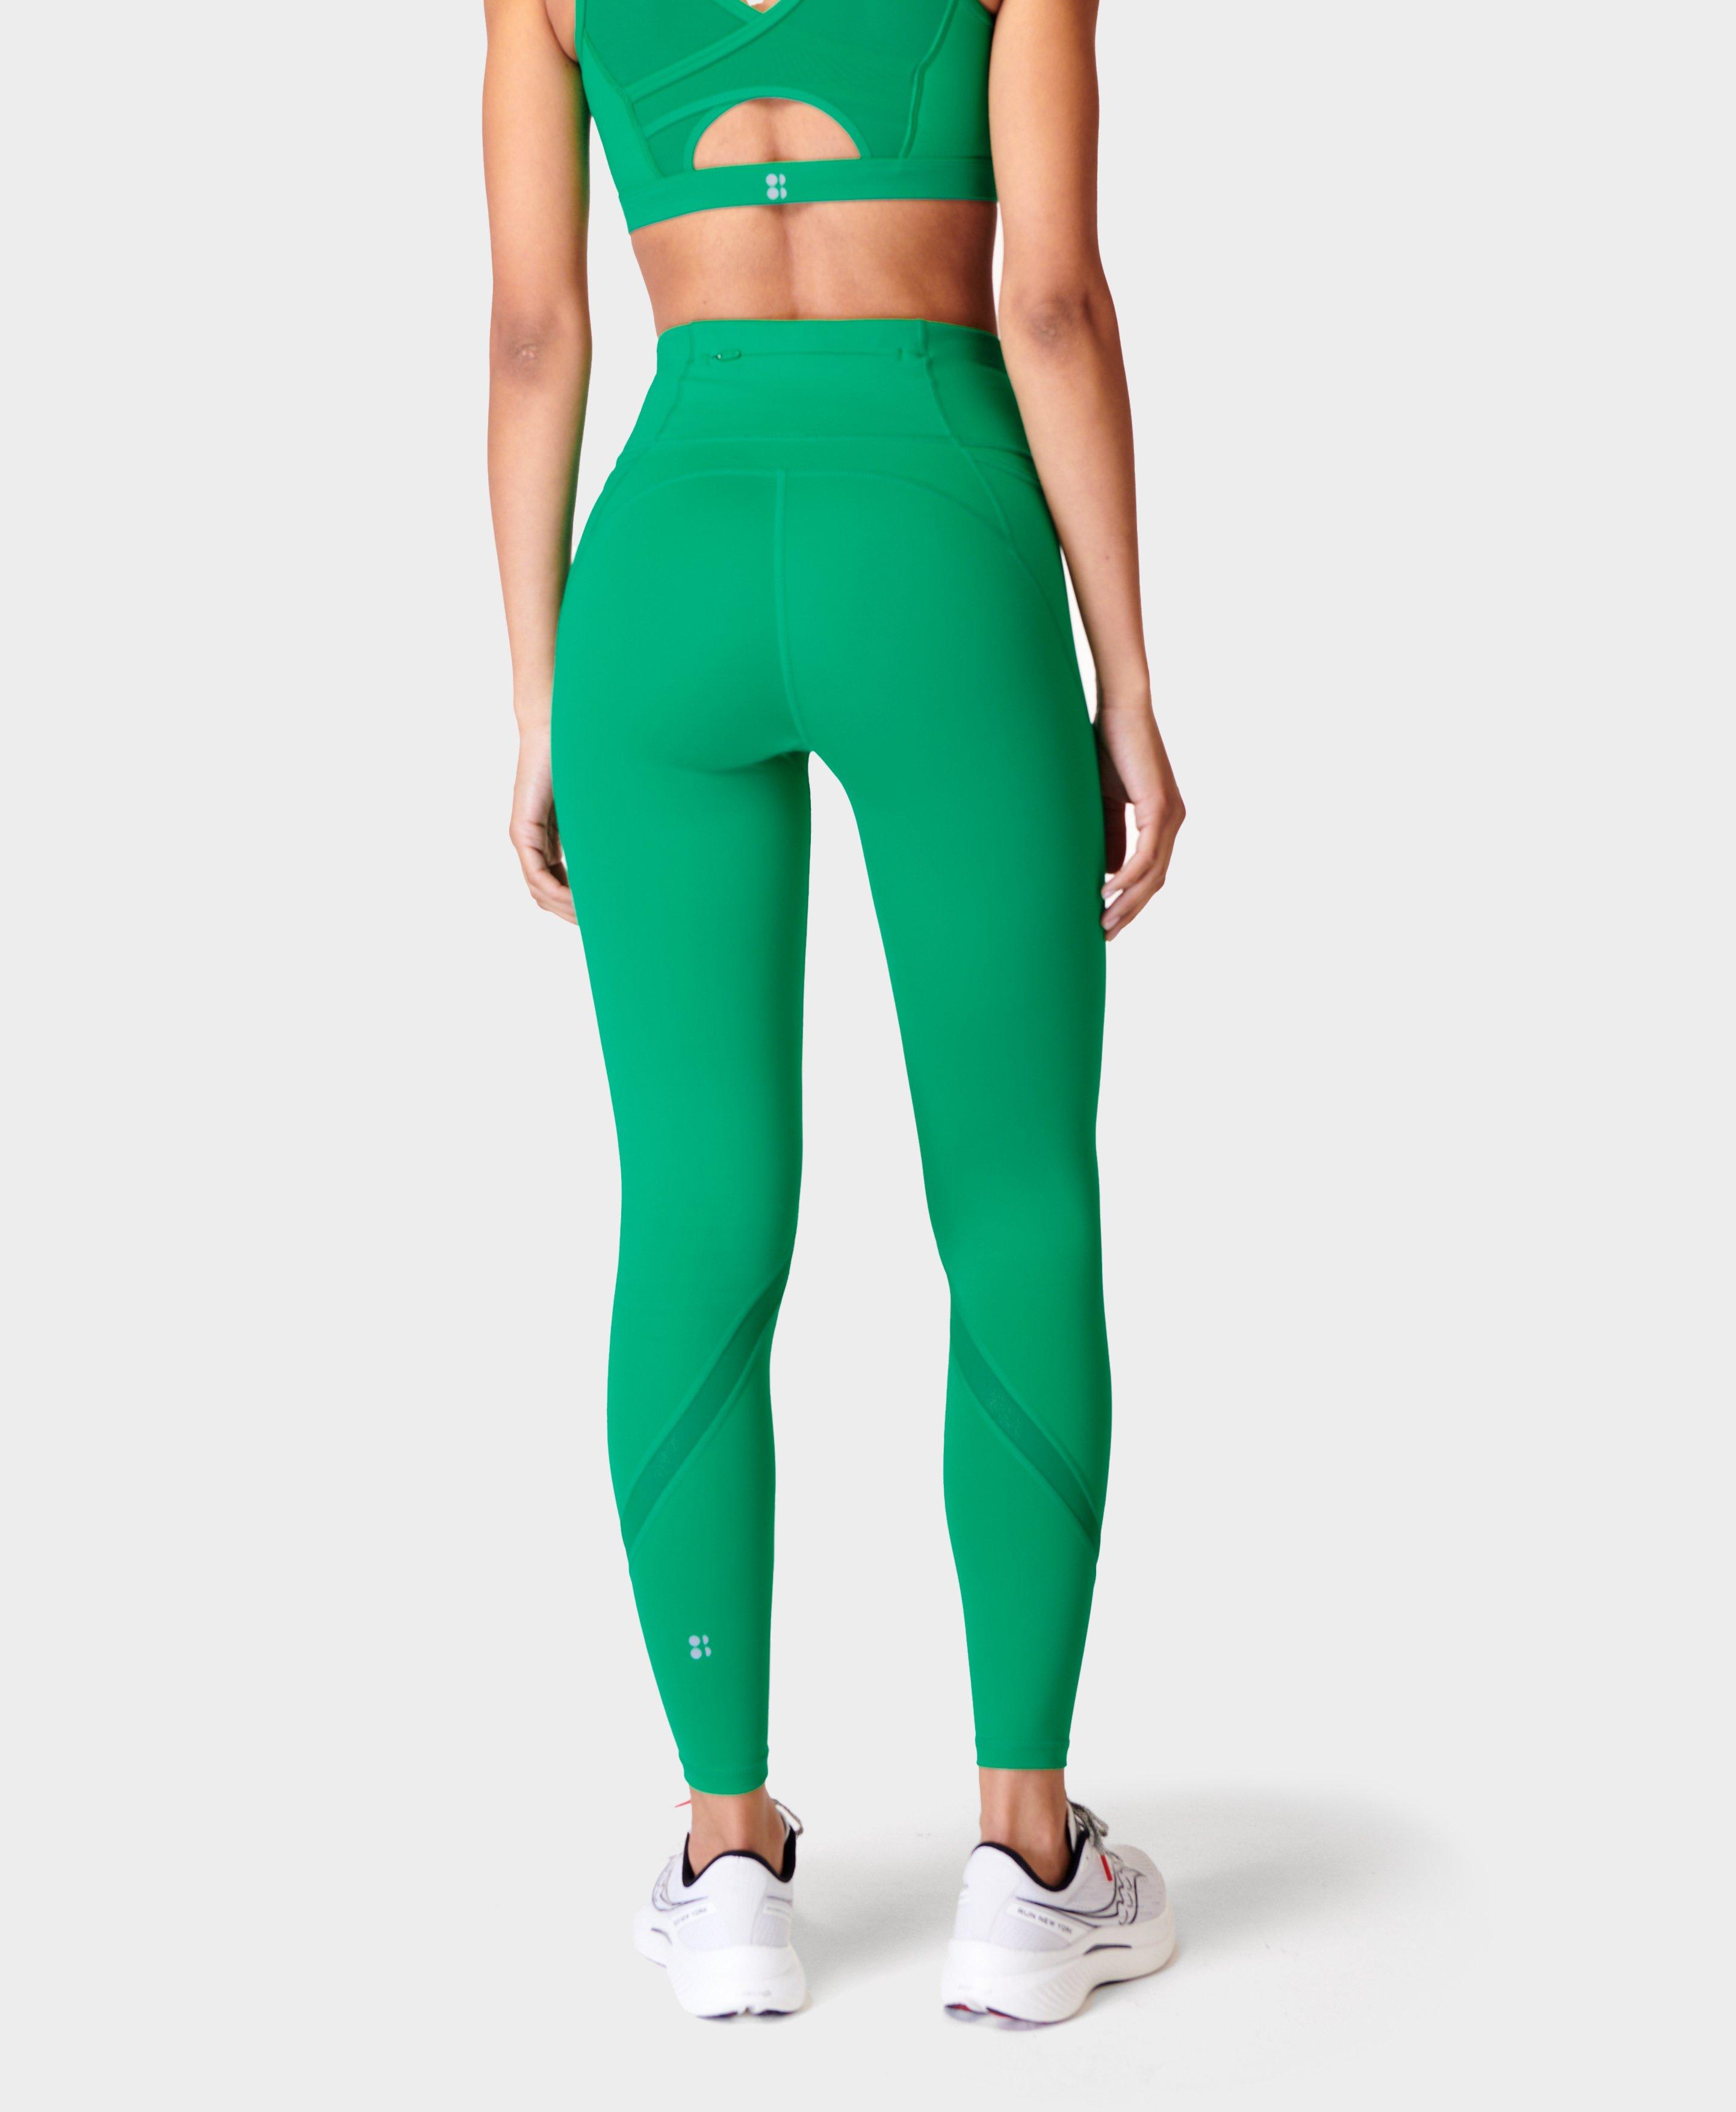 Lululemon Leggings Women's Size 4 Cropped Black/green Mesh - $45